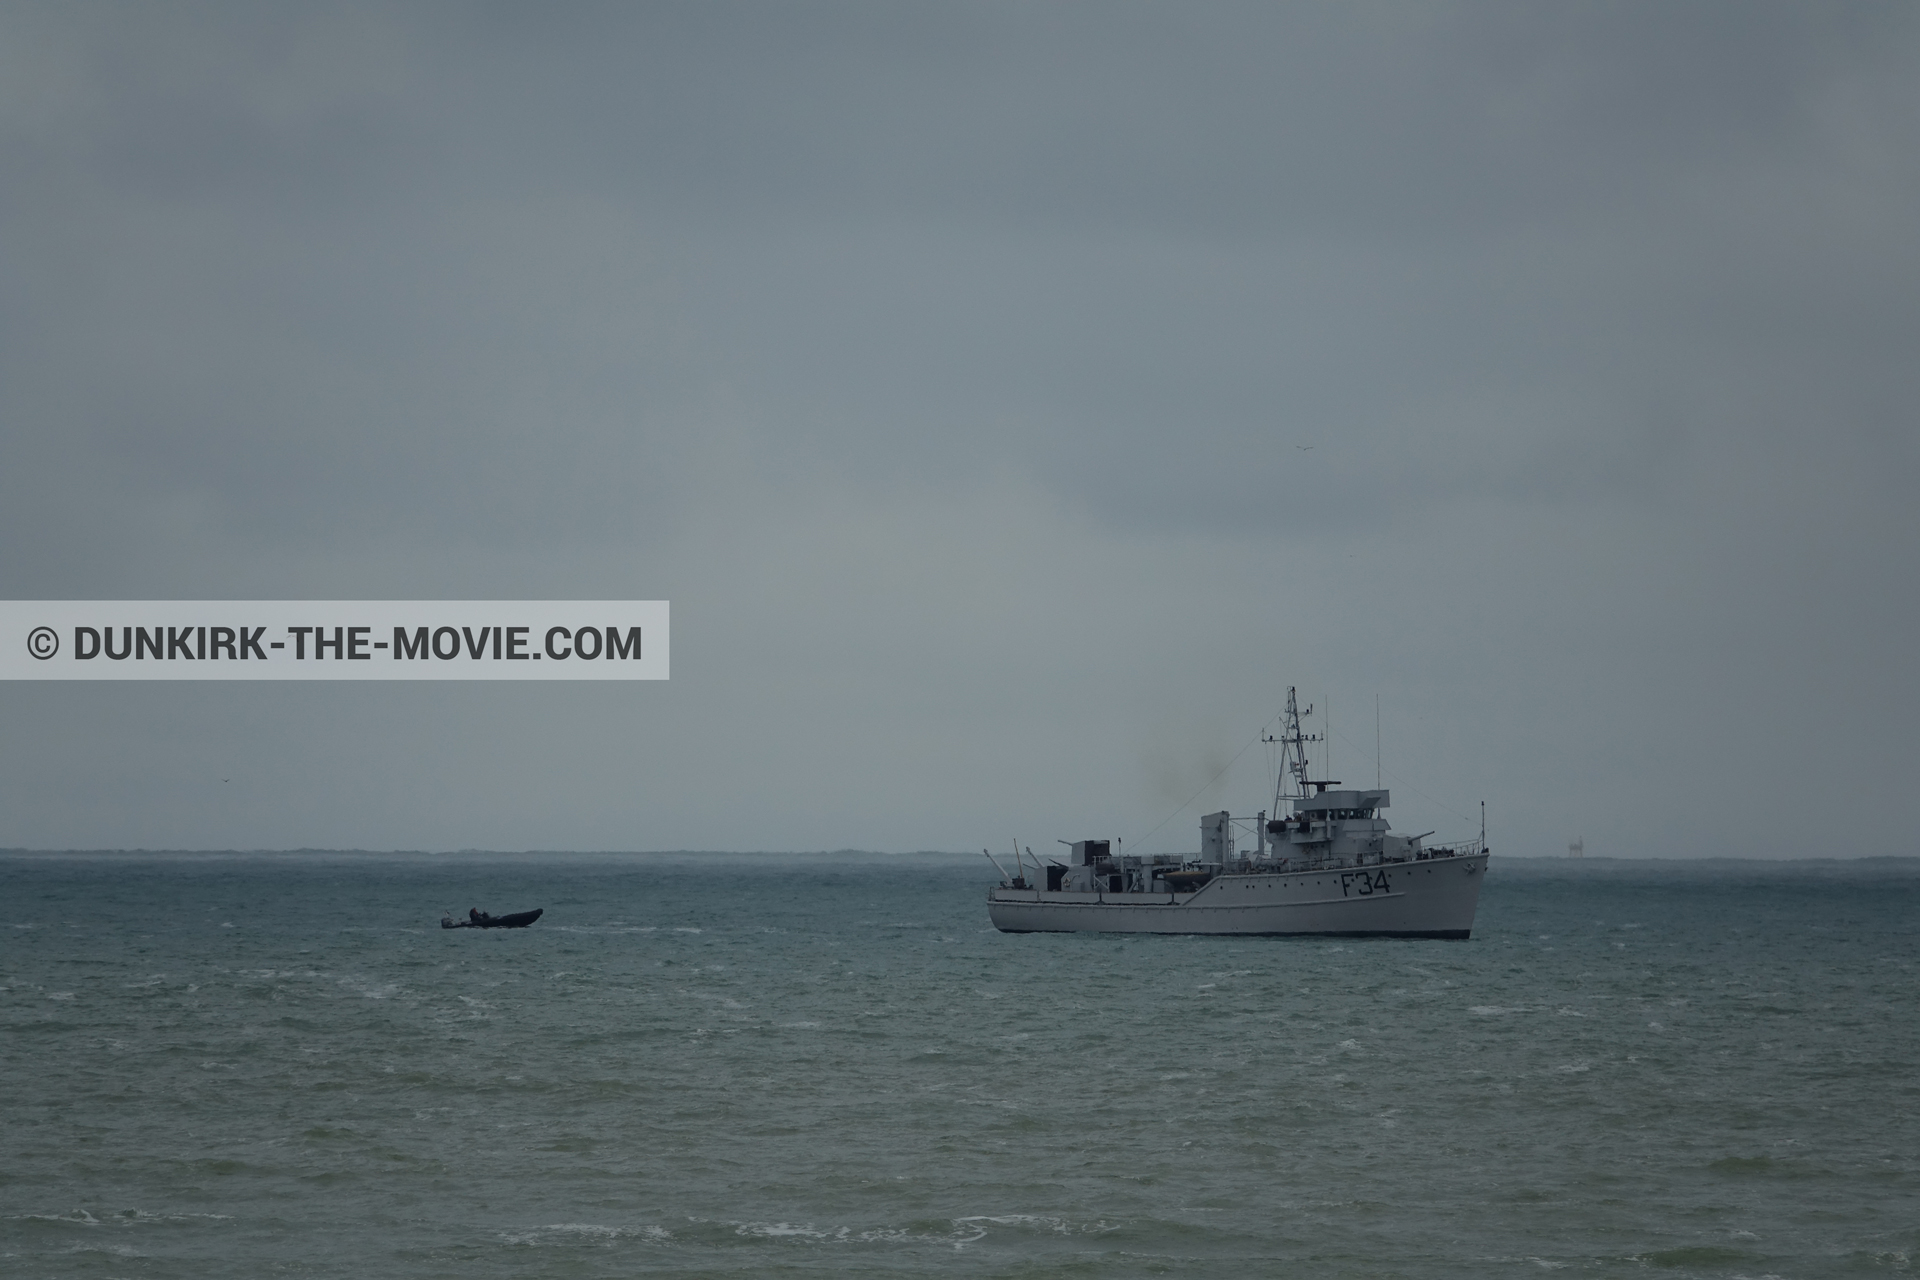 Photo avec bateau, ciel gris, F34 - Hr.Ms. Sittard, mer calme,  des dessous du Film Dunkerque de Nolan